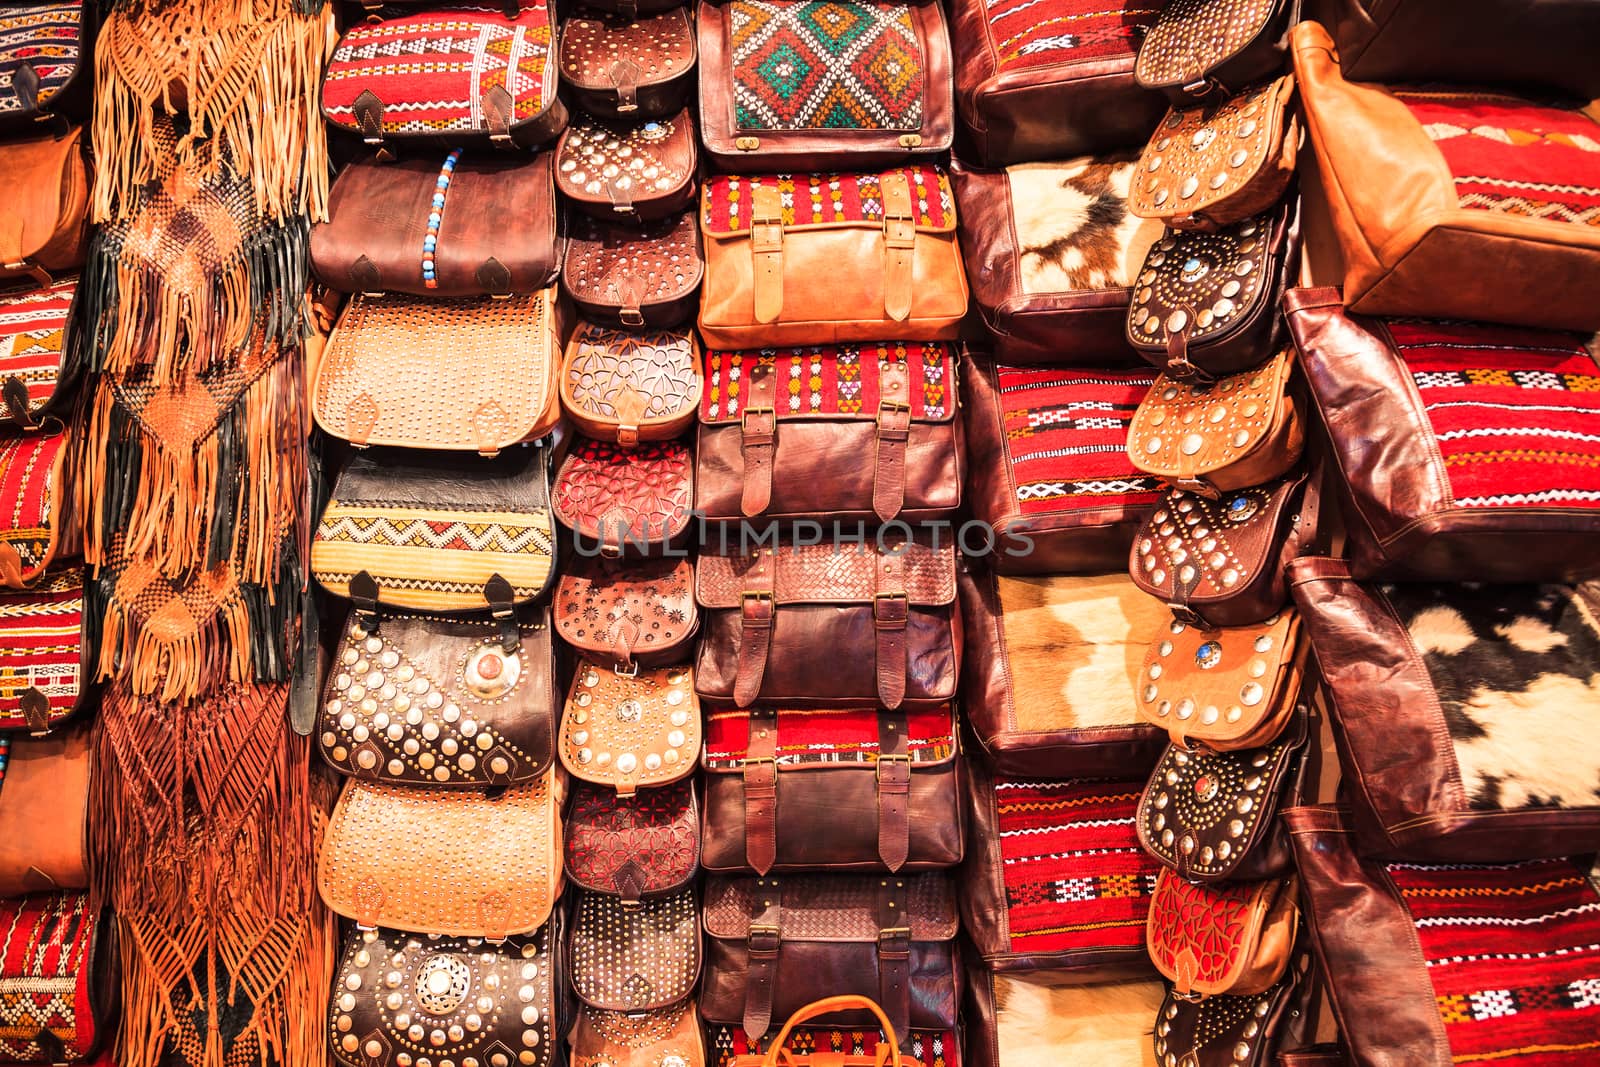 Moroccan leather bag by takepicsforfun